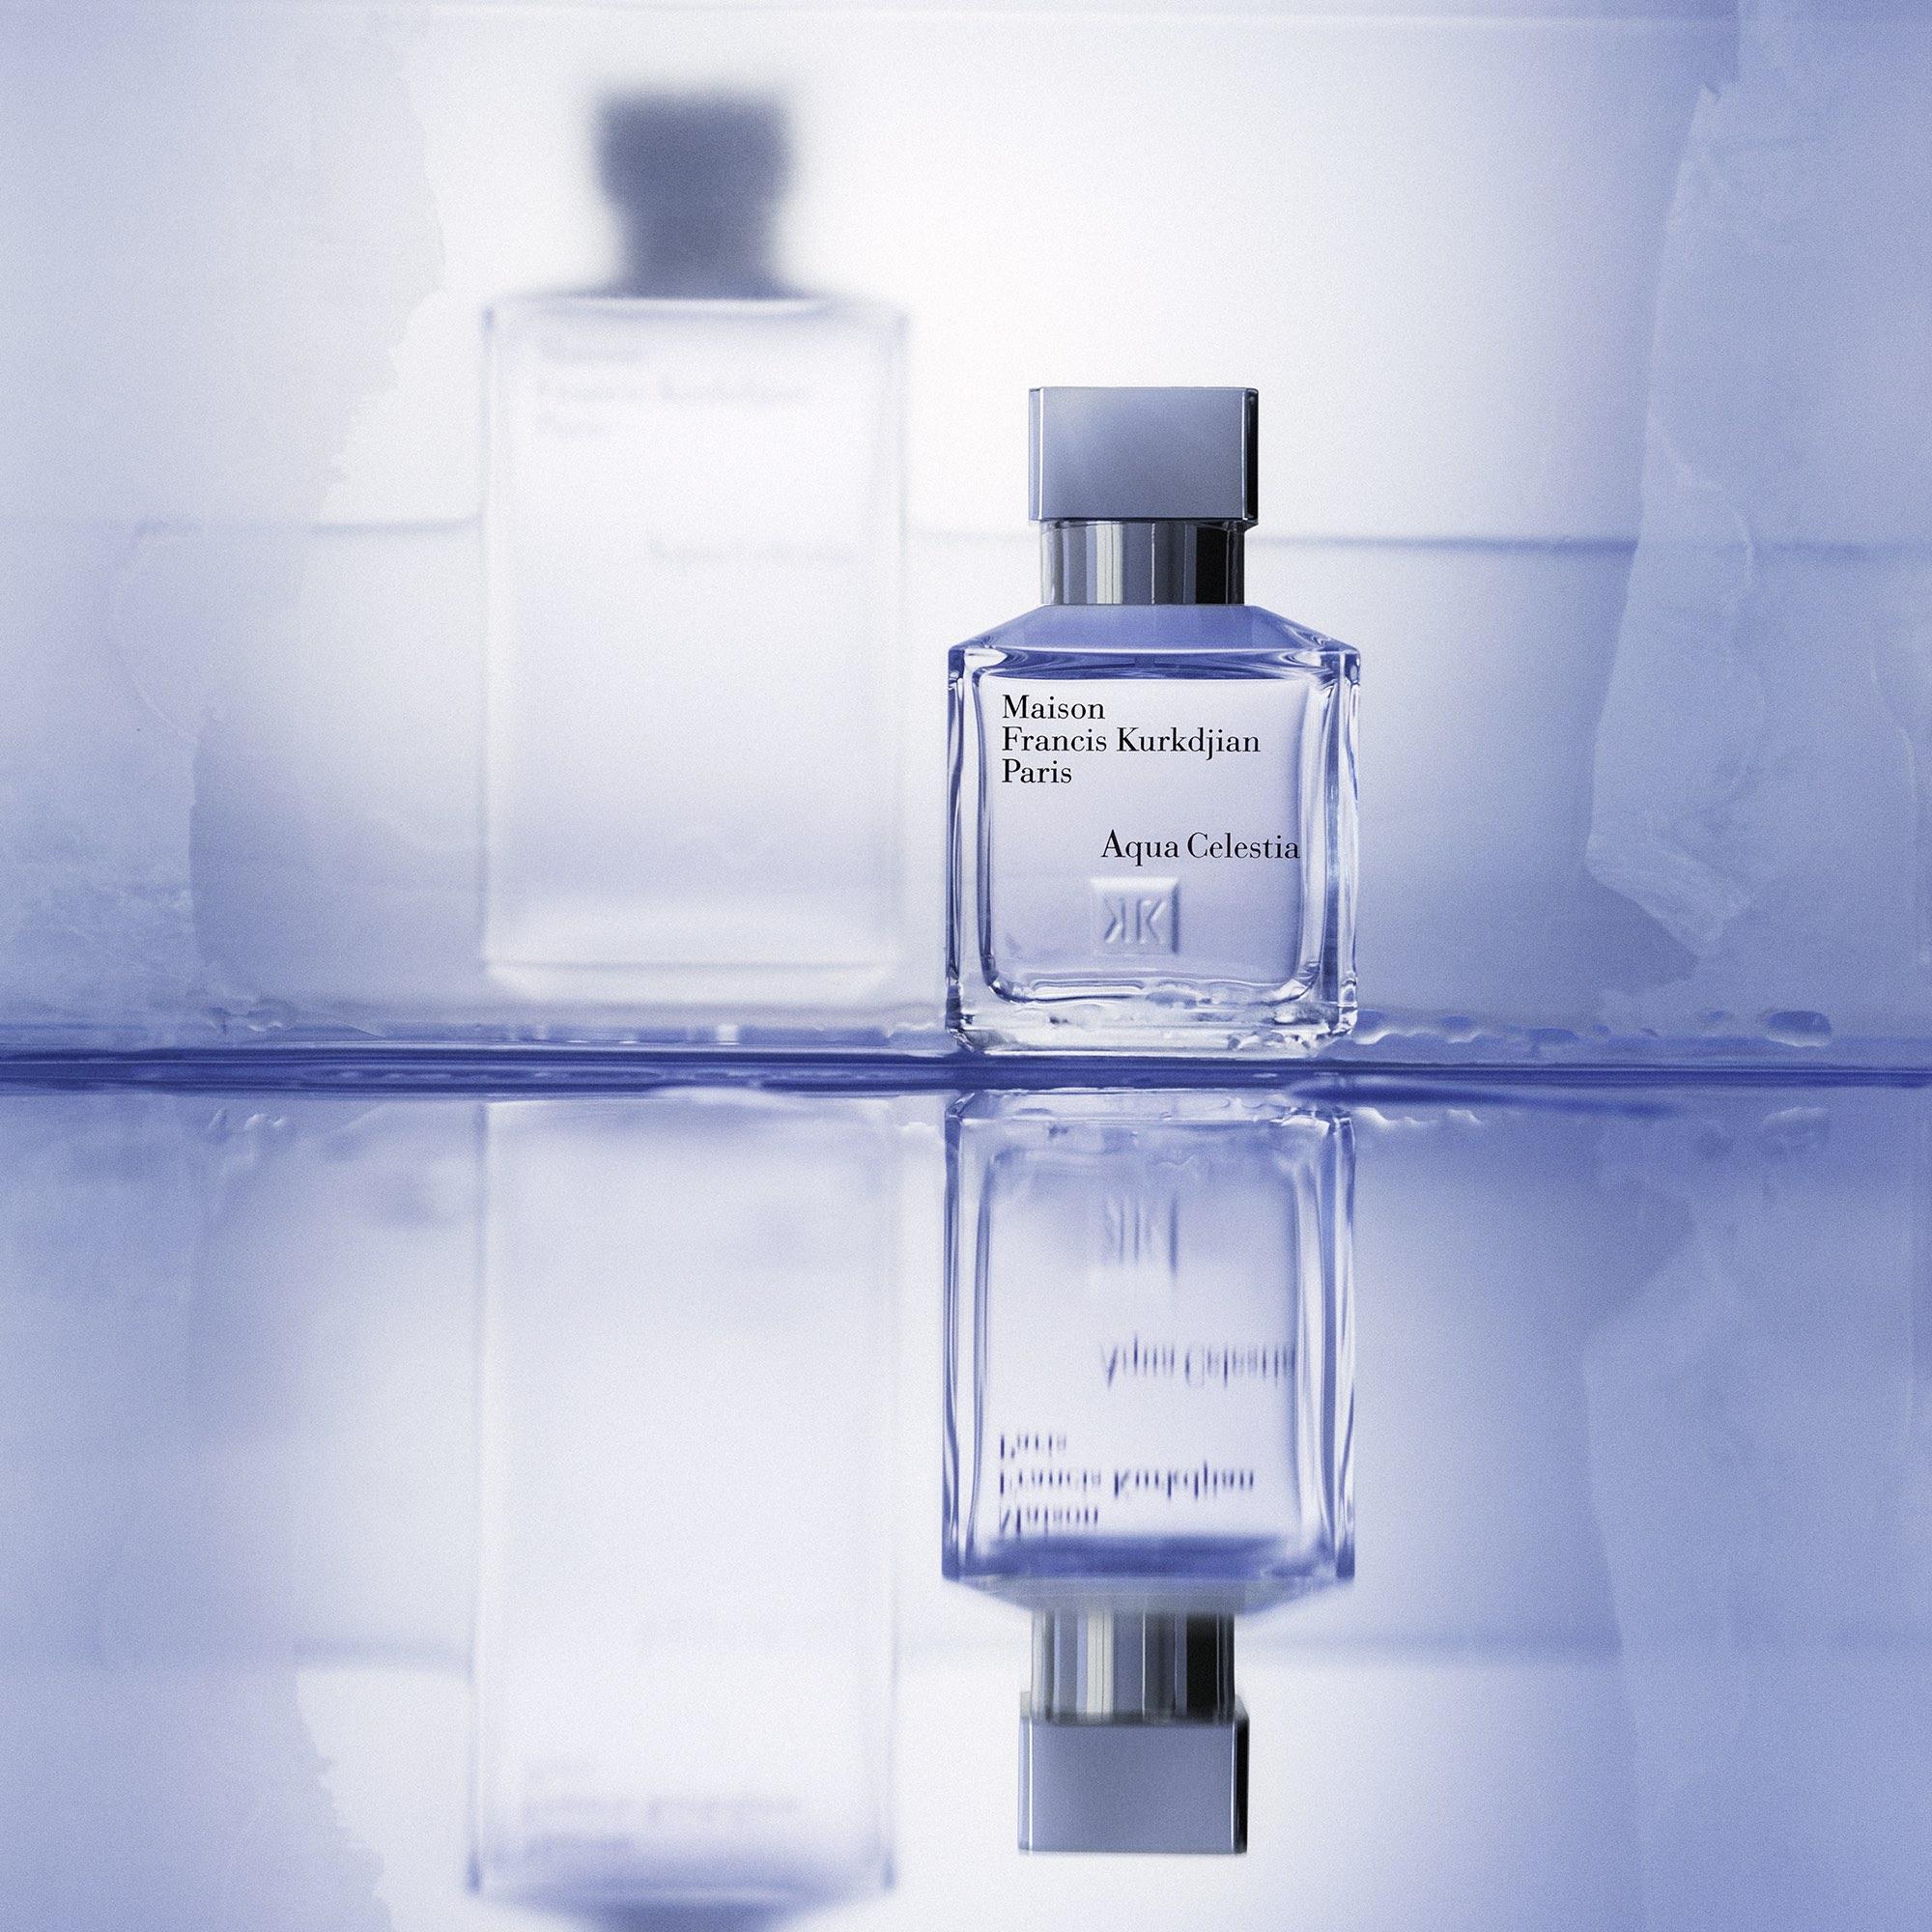 Maison Francis Kurkdjian - Aqua Celestia | Perfume Lounge